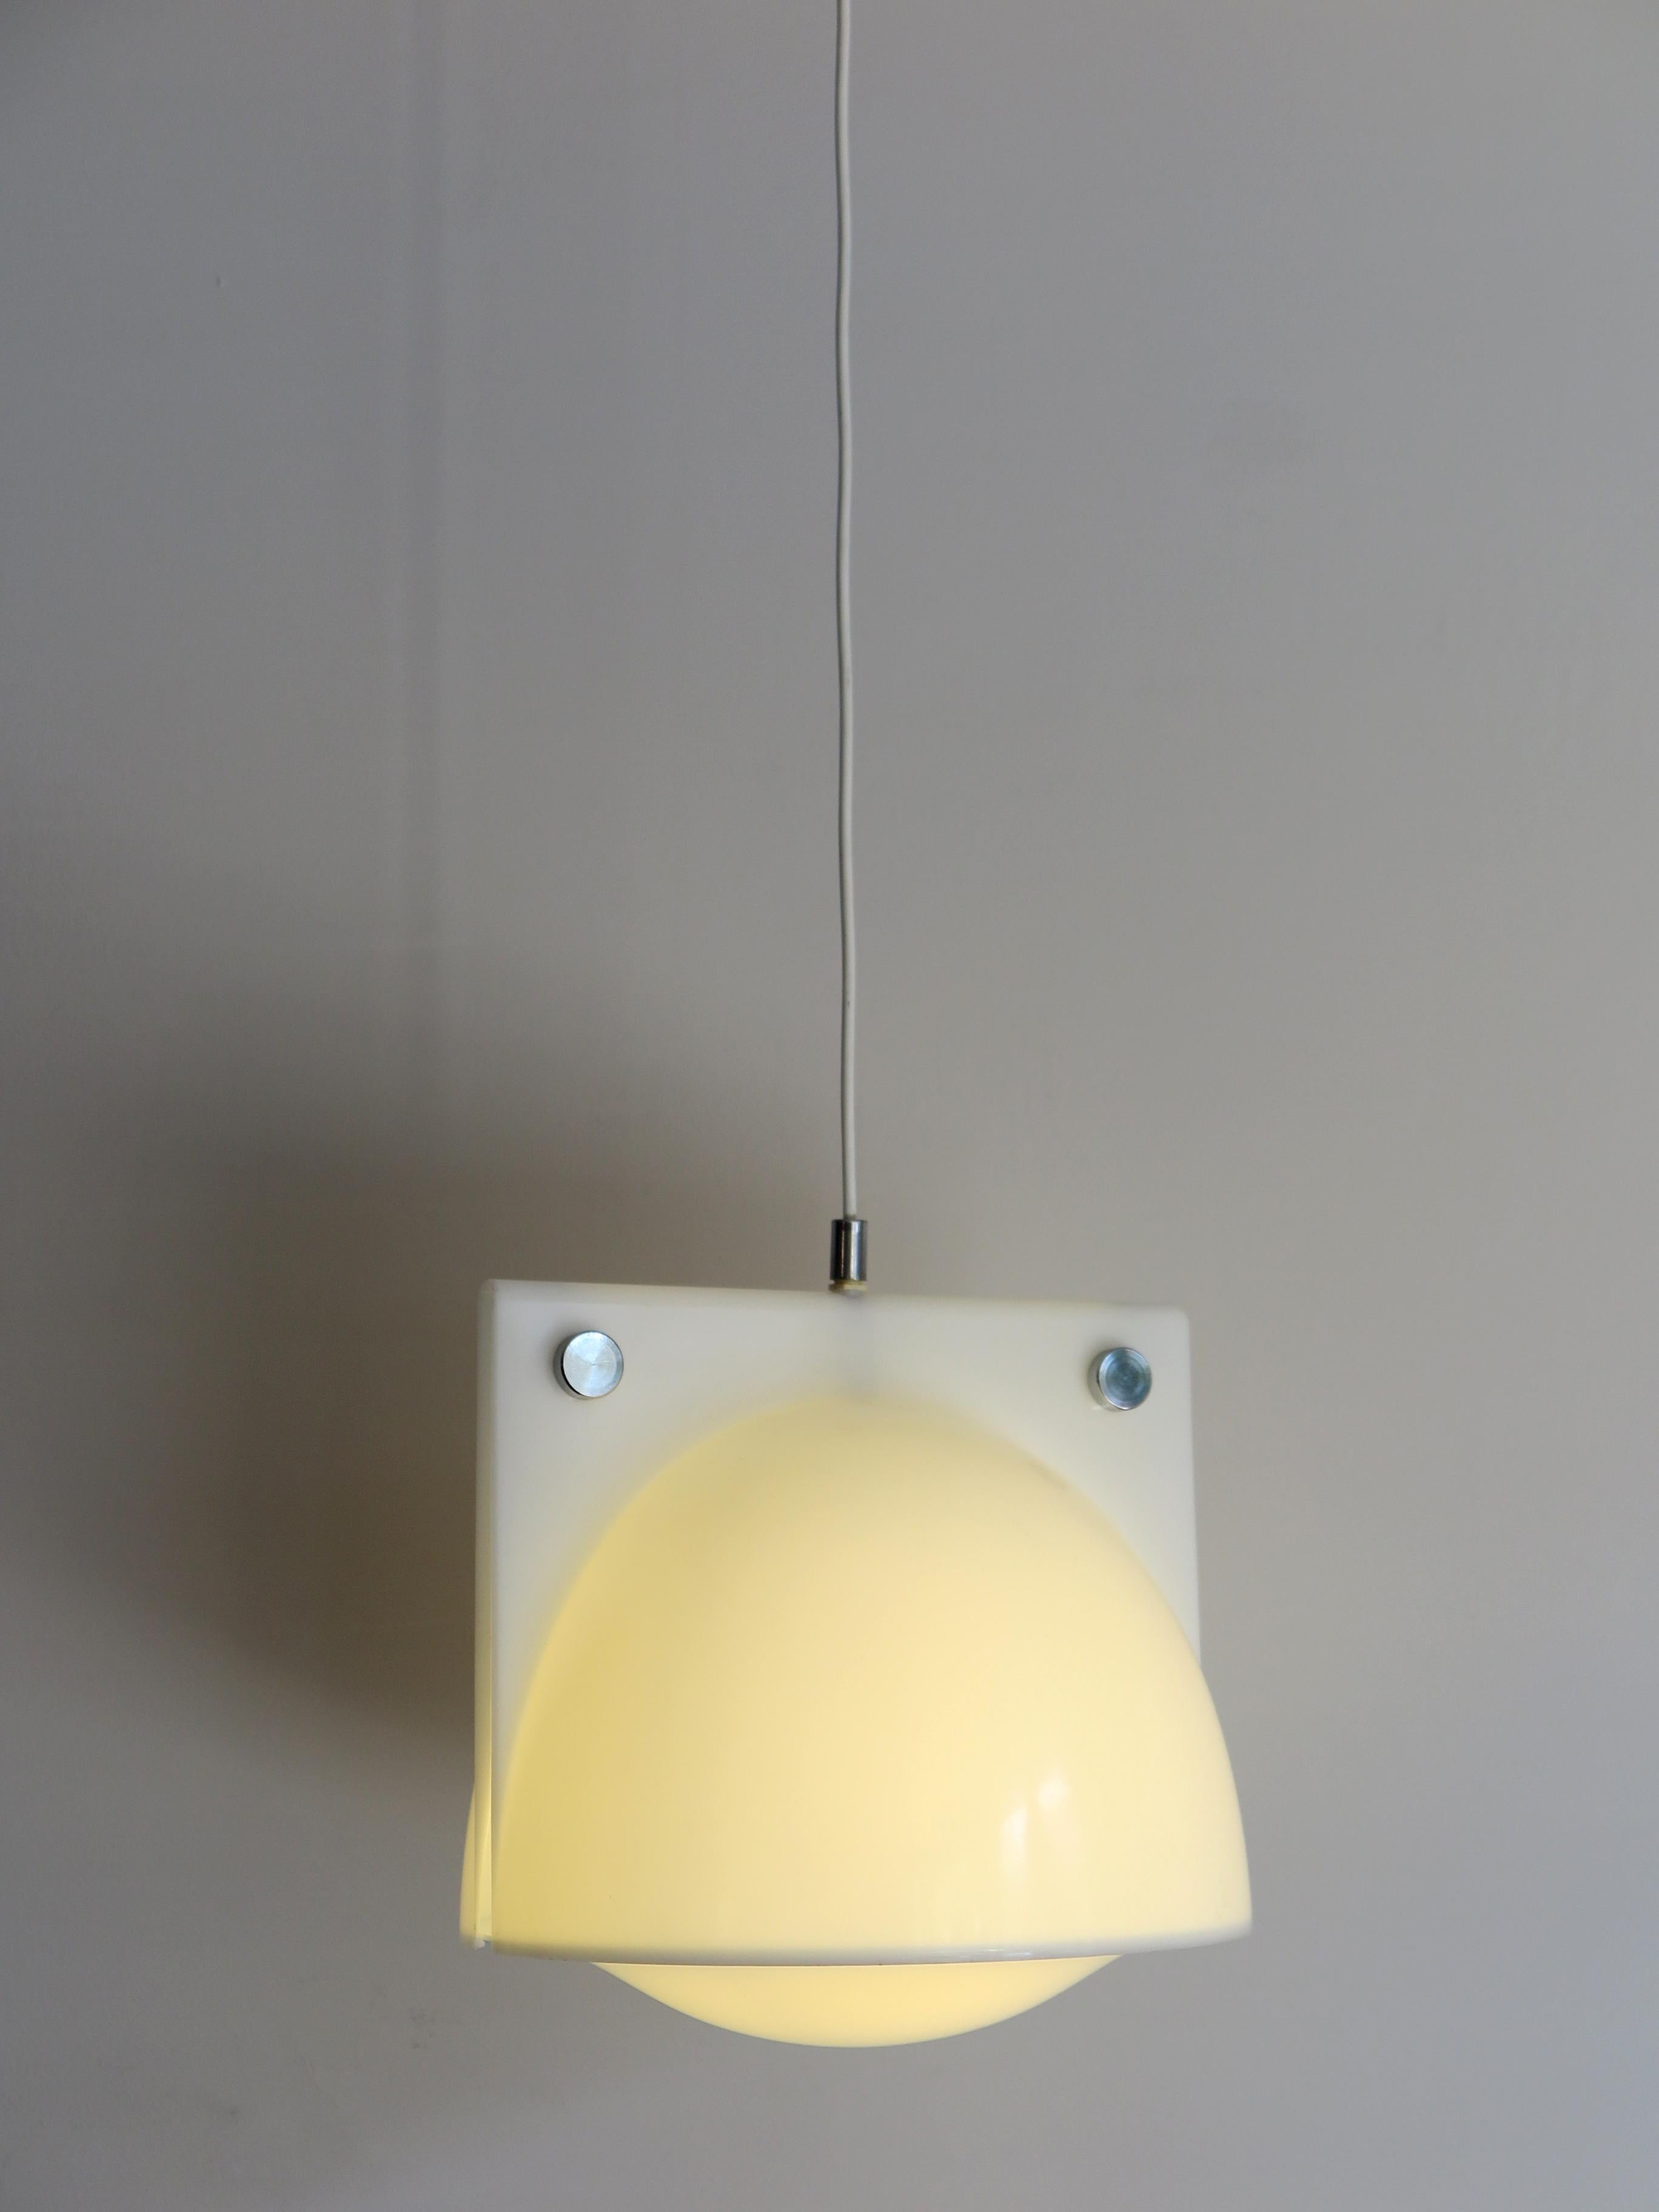 Italienische Methacrylat-Hängeleuchte Modell Orione, entworfen von Ermanno Lampa & Sergio Brazzoli für Guzzini Harvey, 1970er Jahre
Bitte beachten Sie, dass die Lampe original aus der Zeit ist und diese normale Alters- und Gebrauchsspuren aufweist.